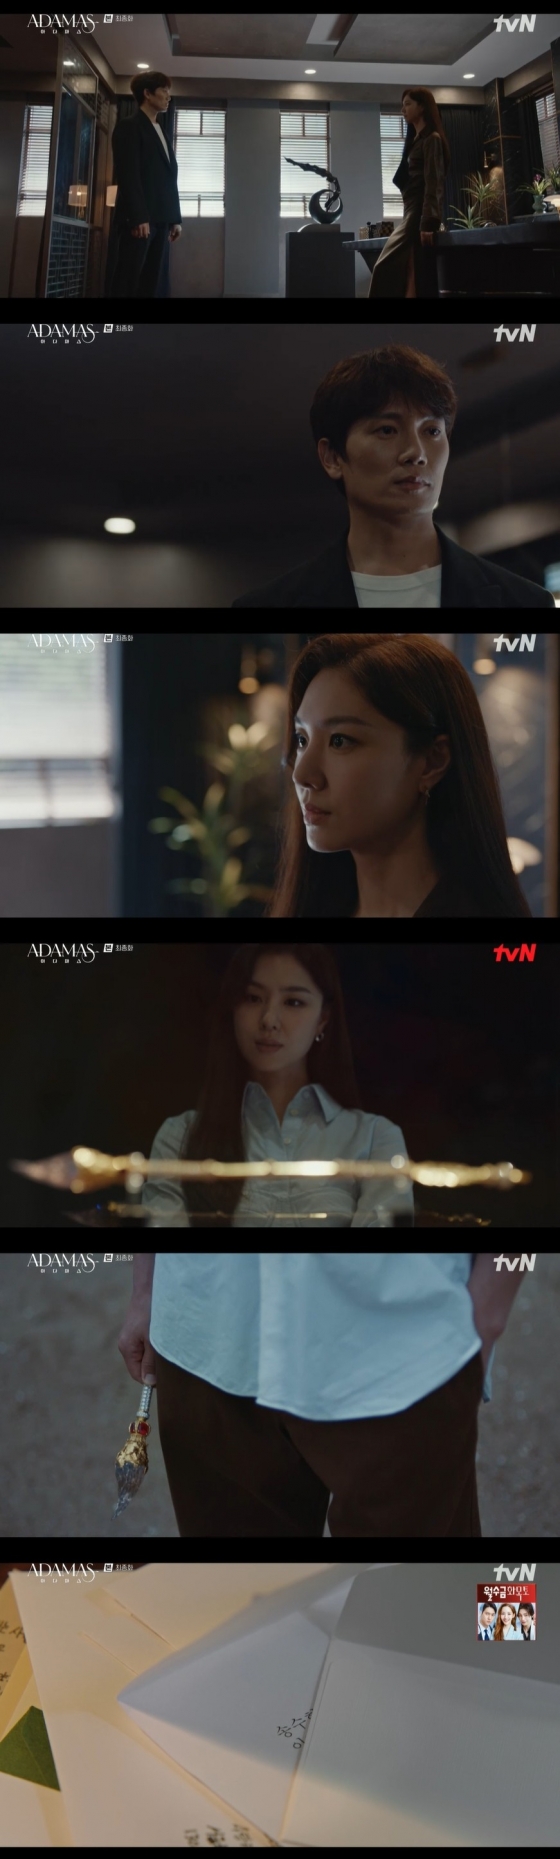 /사진=tvN 수목드라마 '아다마스’ 방송화면